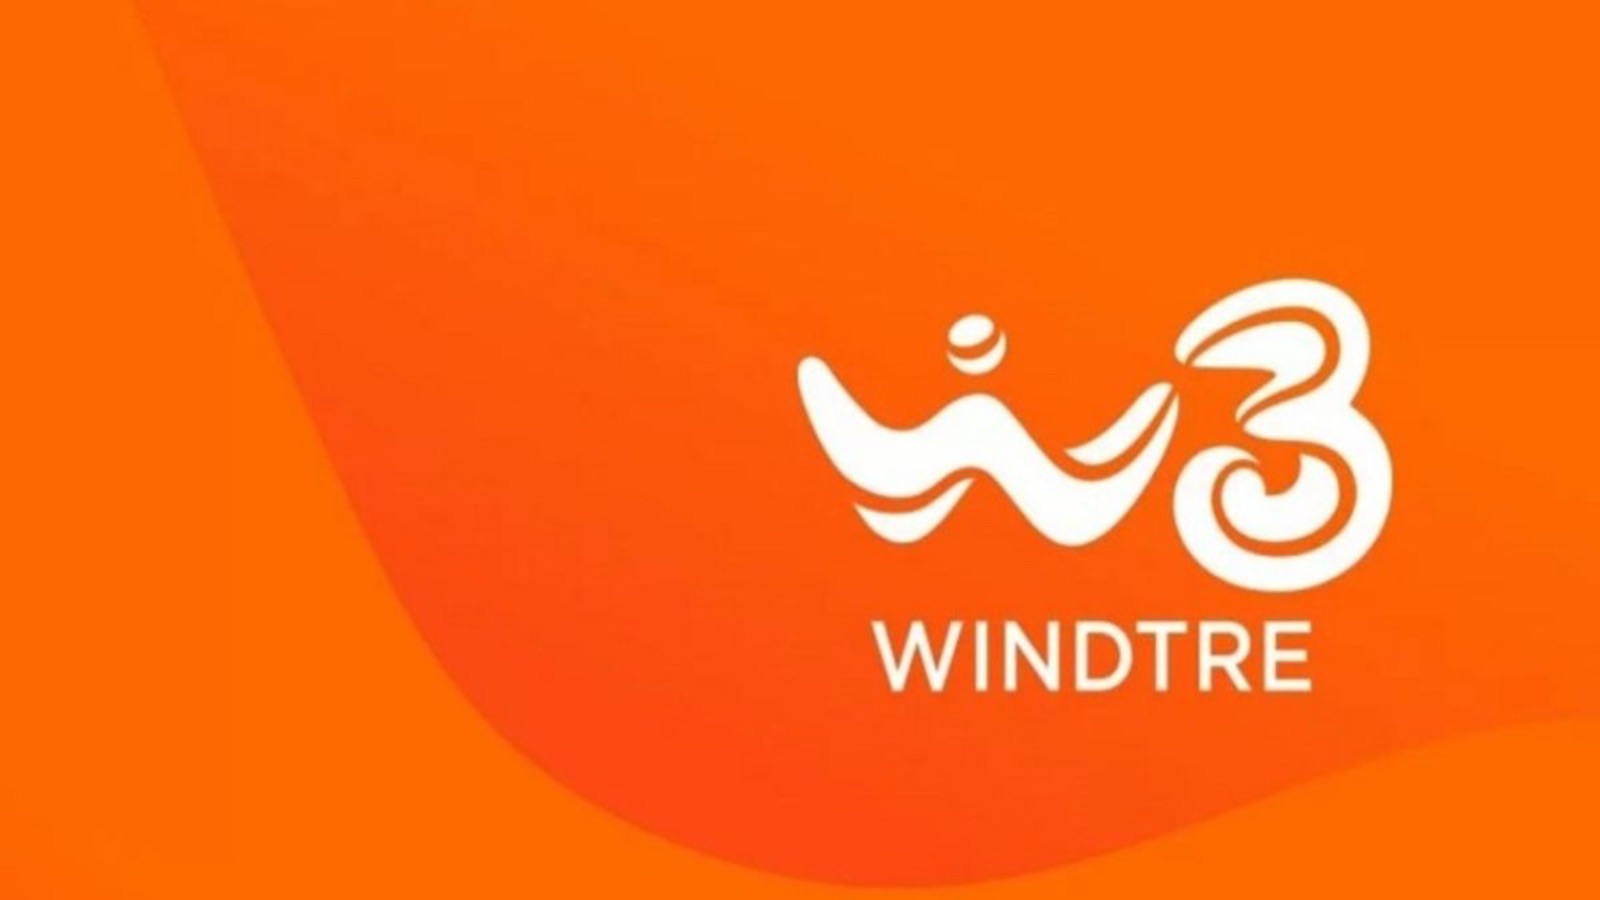 WindTRE ha la promo dell'anno, la GO 150 TOP+ costa solo 5 euro